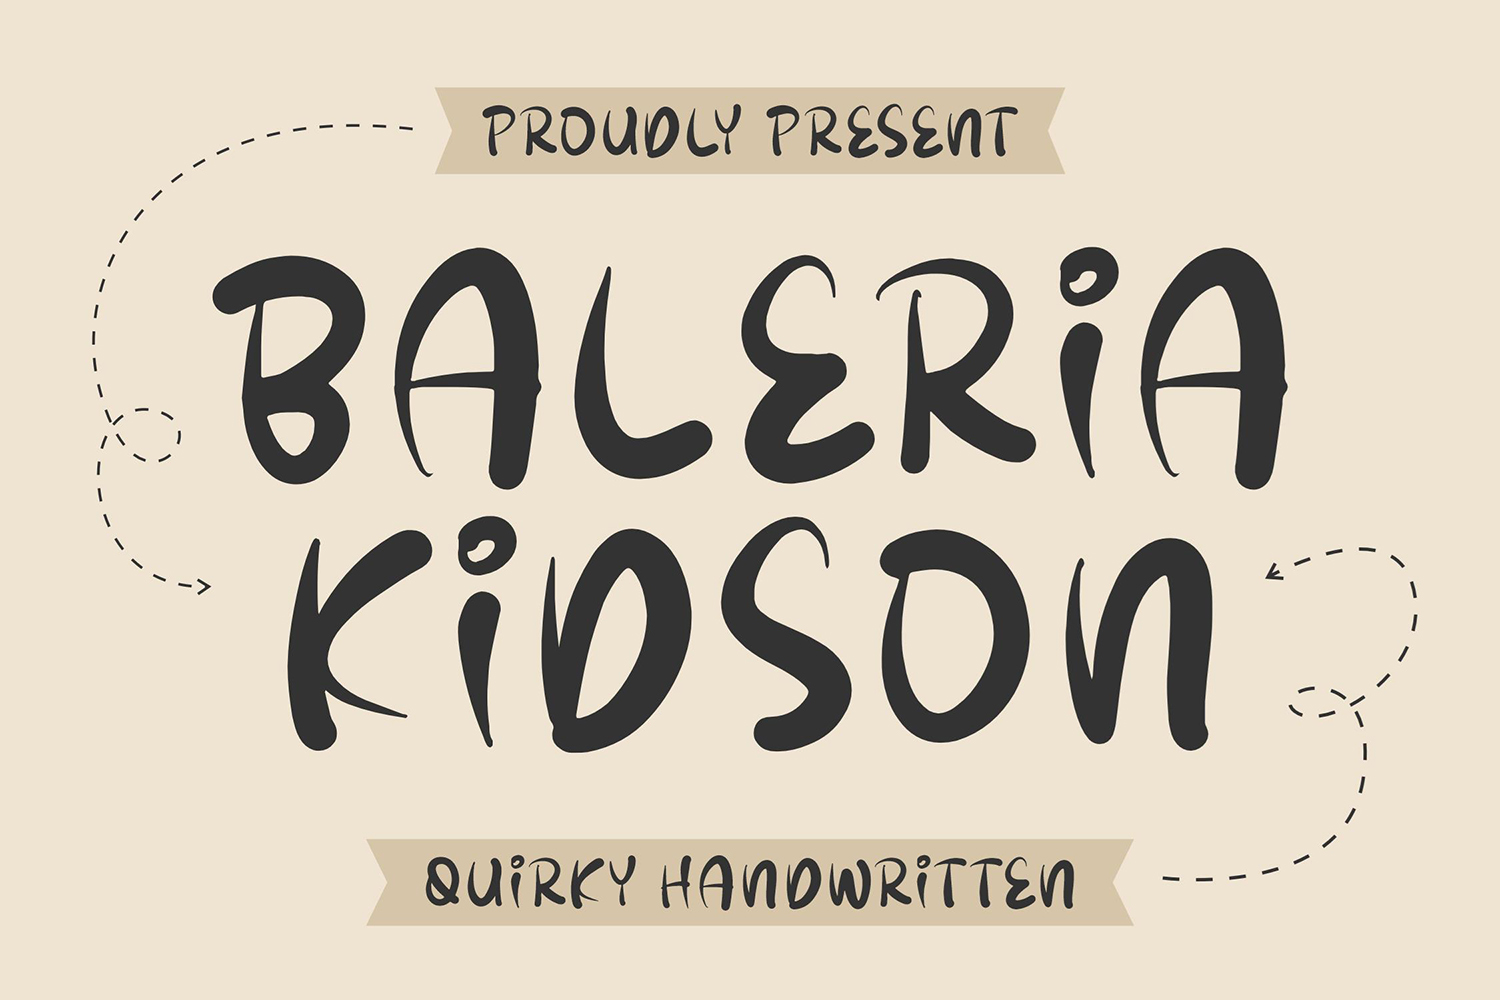 Baleria Kidson Free Font